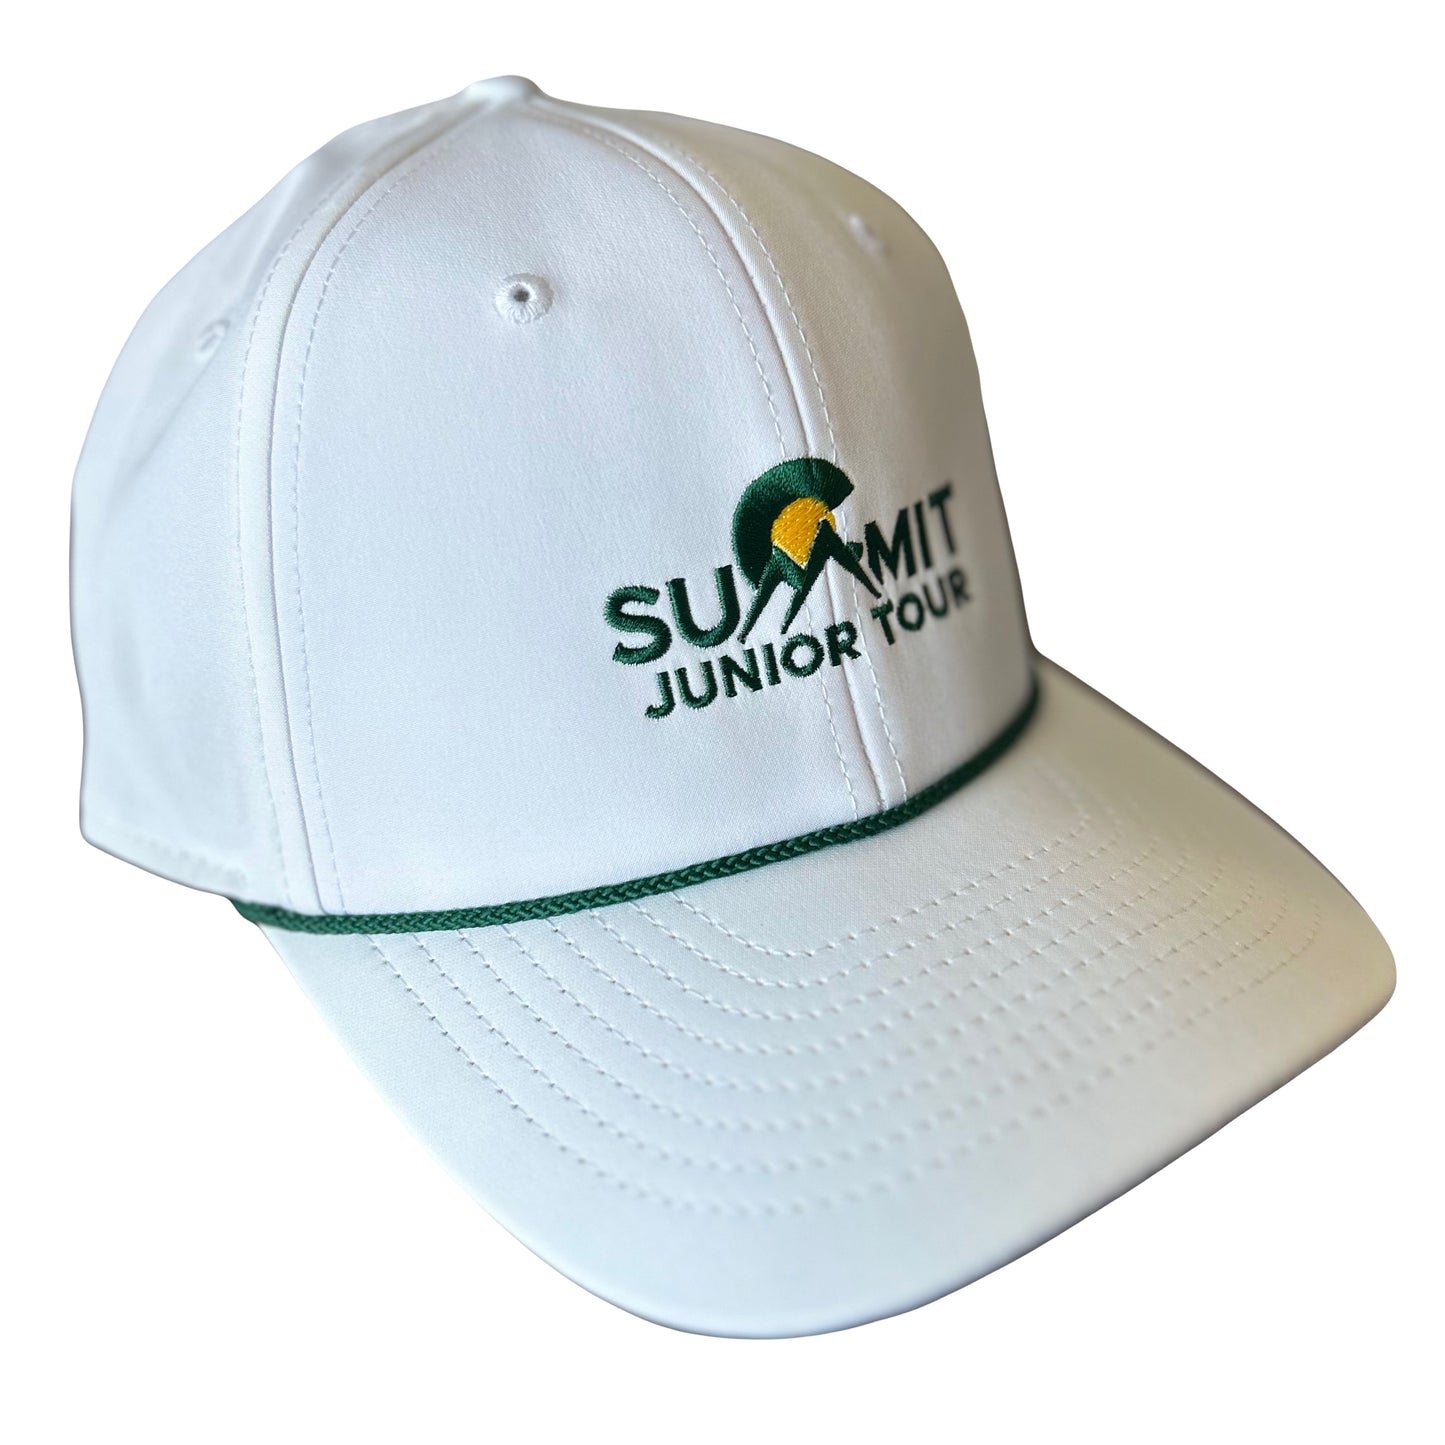 Summit Junior Tour Masters Hat-2 Colors